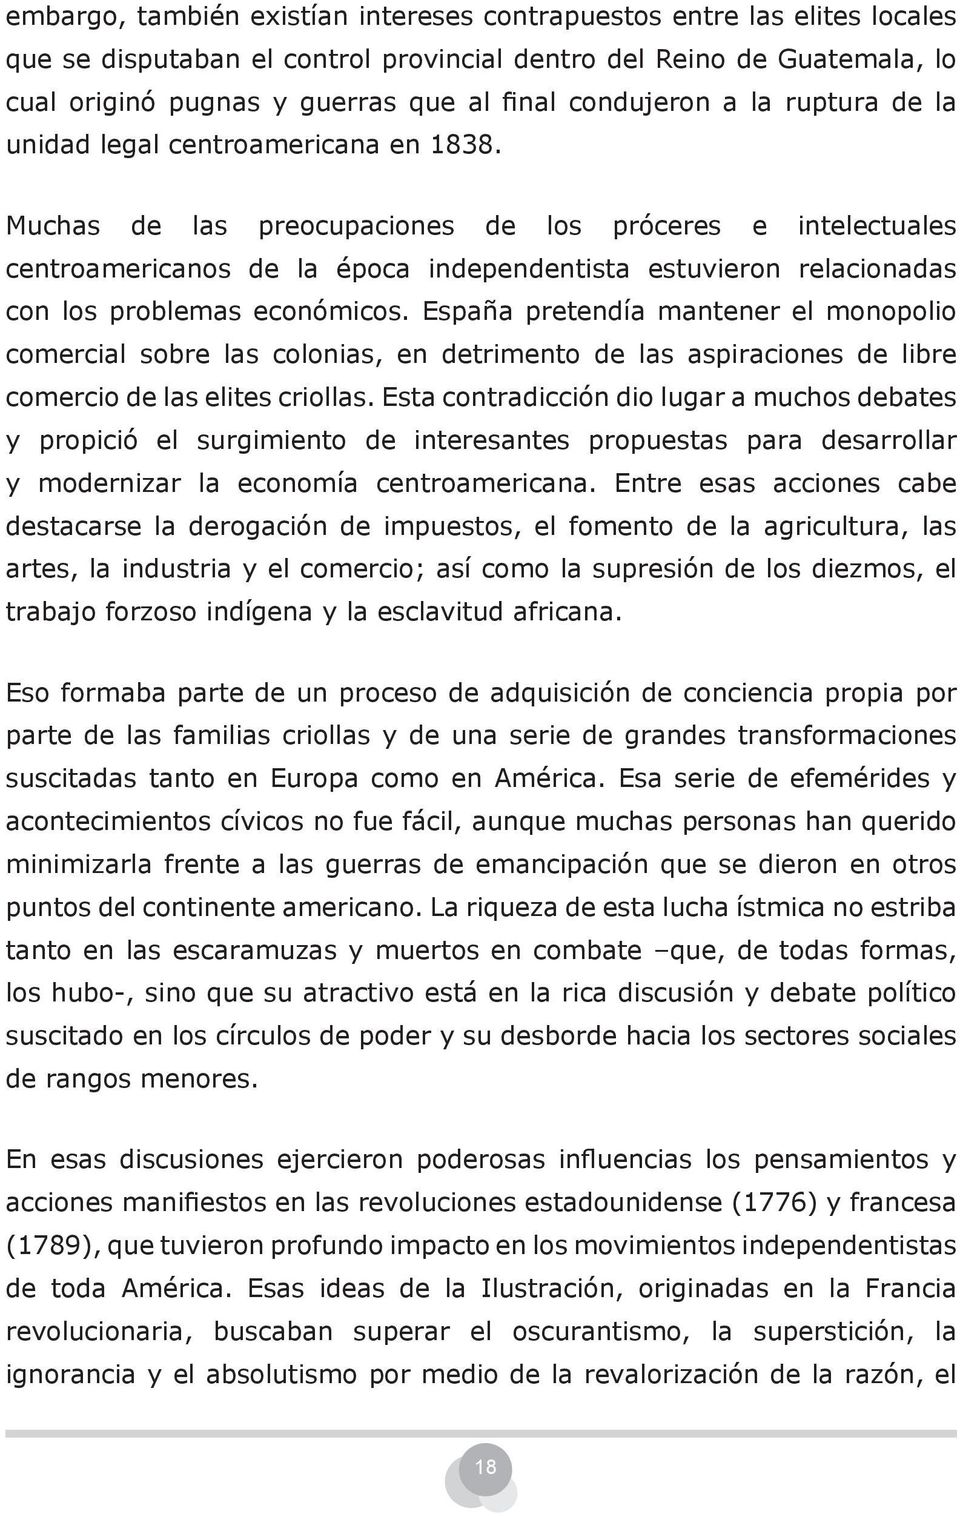 Muchas de las preocupaciones de los próceres e intelectuales centroamericanos de la época independentista estuvieron relacionadas con los problemas económicos.